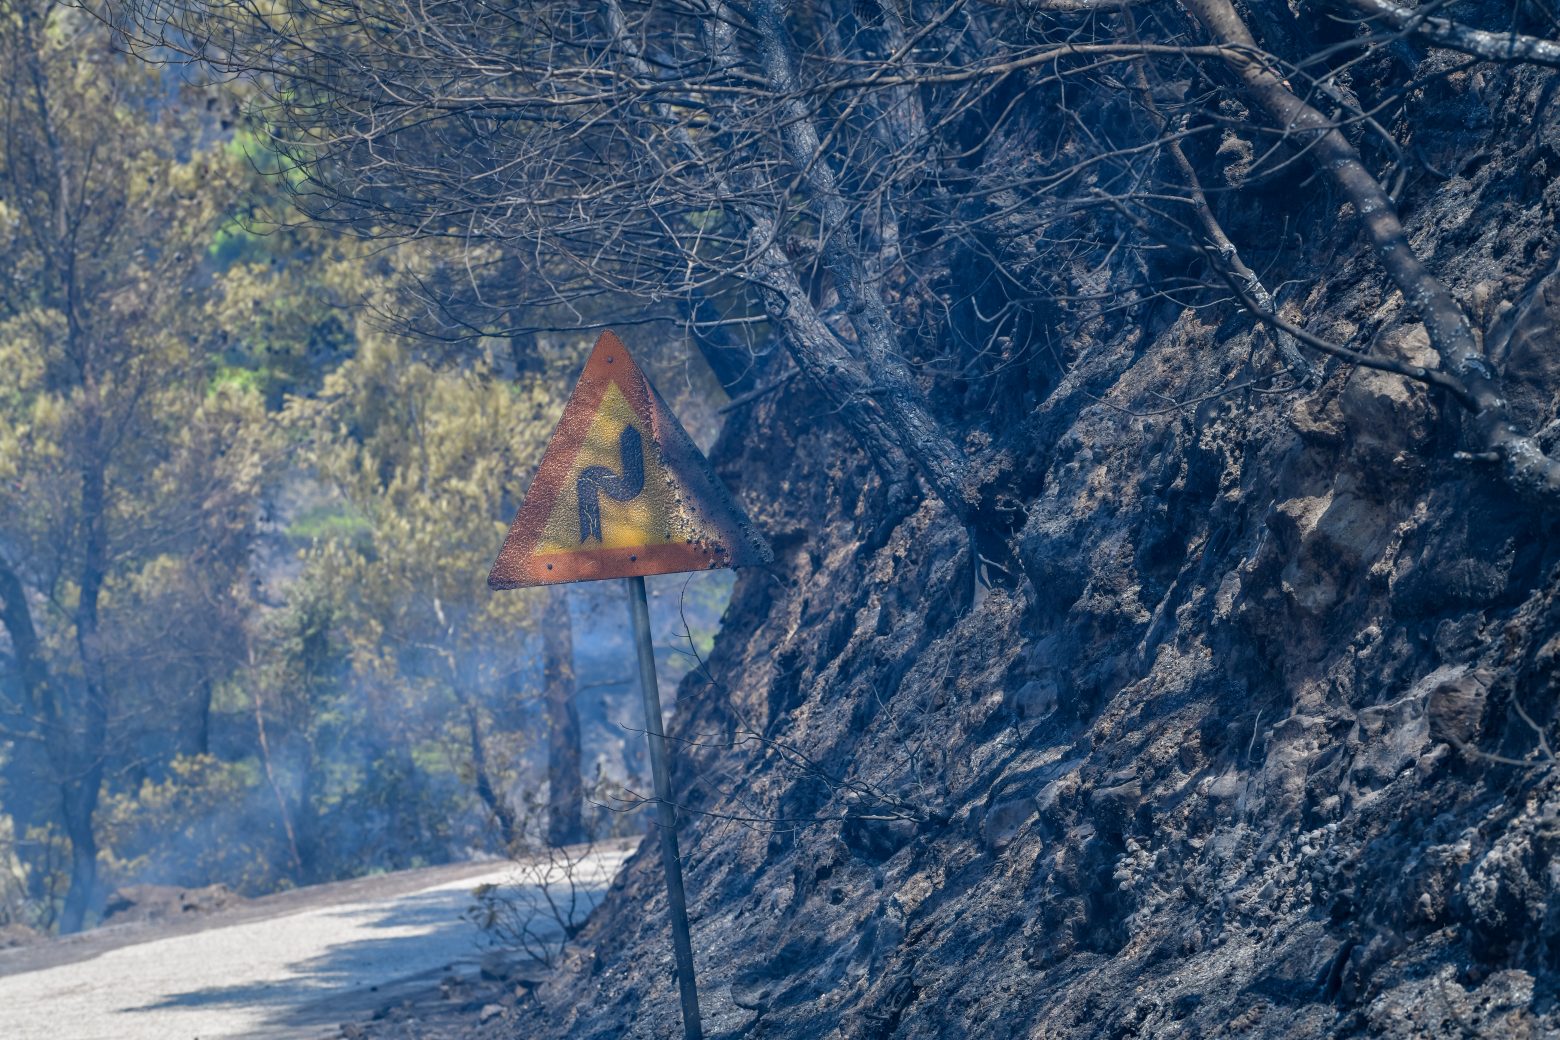 Πυρκαγιές - Ξεκίνησε η καταγραφή ζημιών στις πυρόπληκτες περιοχές από την Περιφέρεια Πελοποννήσου